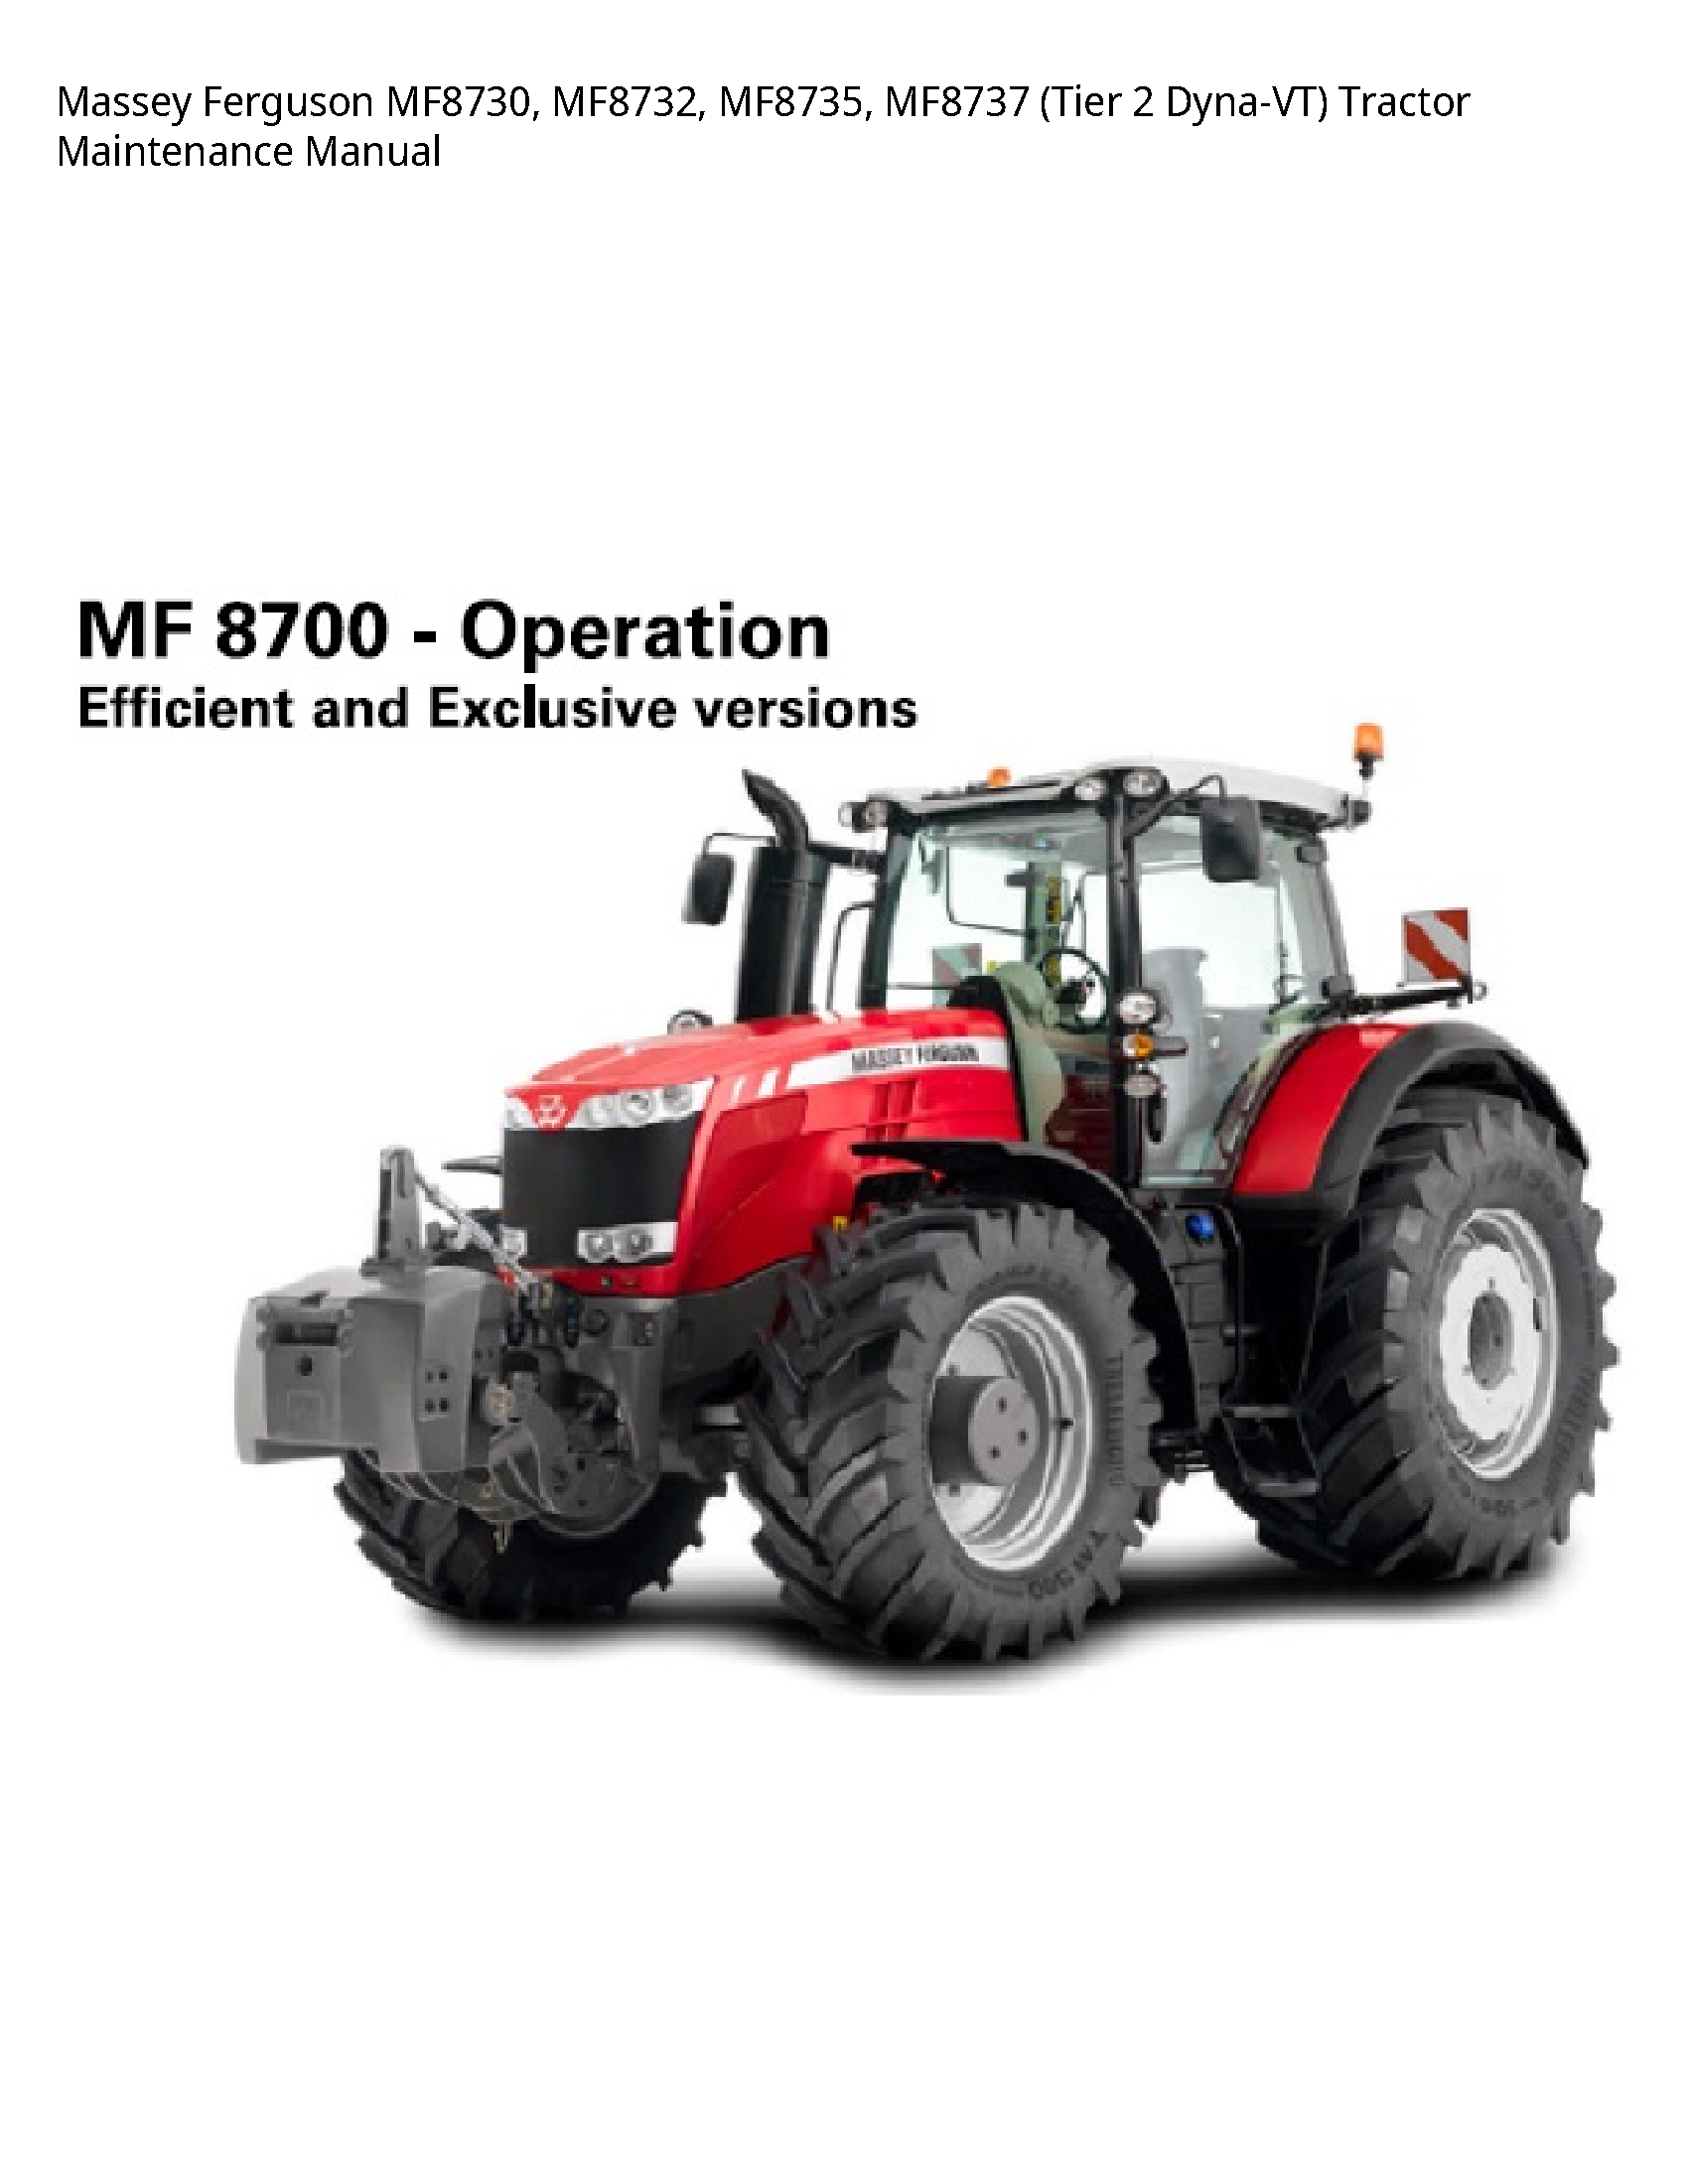 Massey Ferguson MF8730 (Tier Dyna-VT) Tractor Maintenance manual